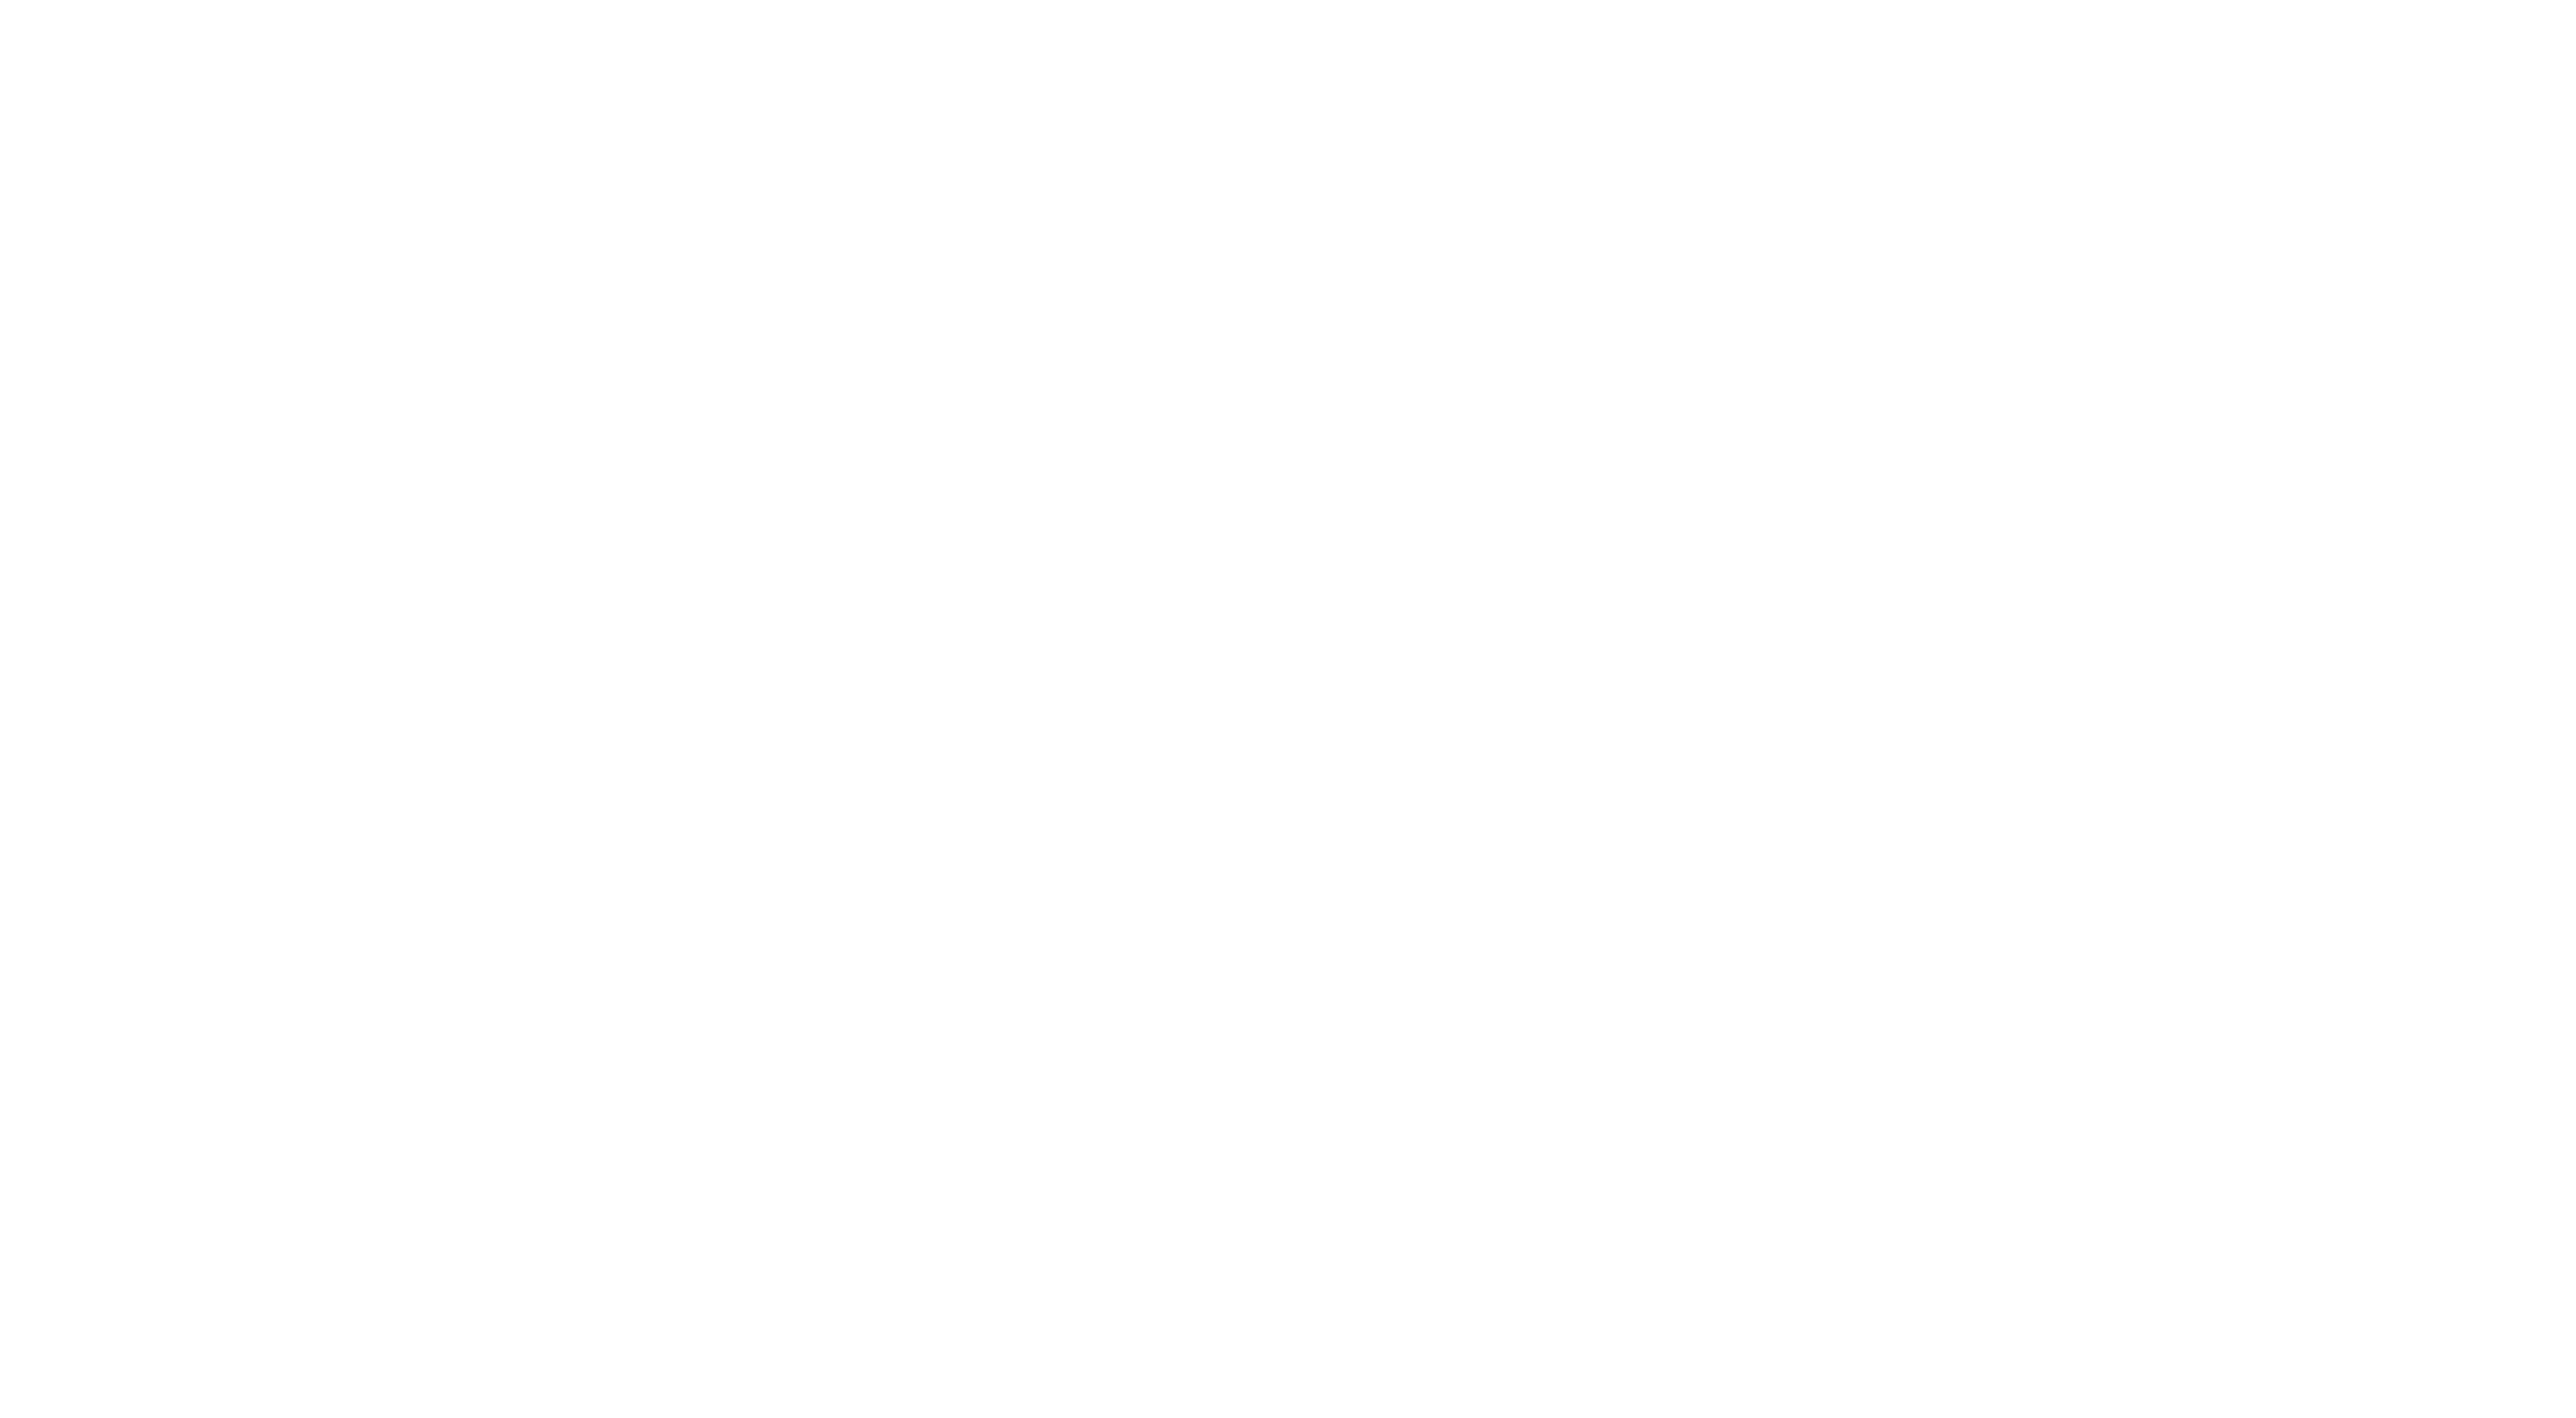 wlc-logo.jpg - 806.93 kB